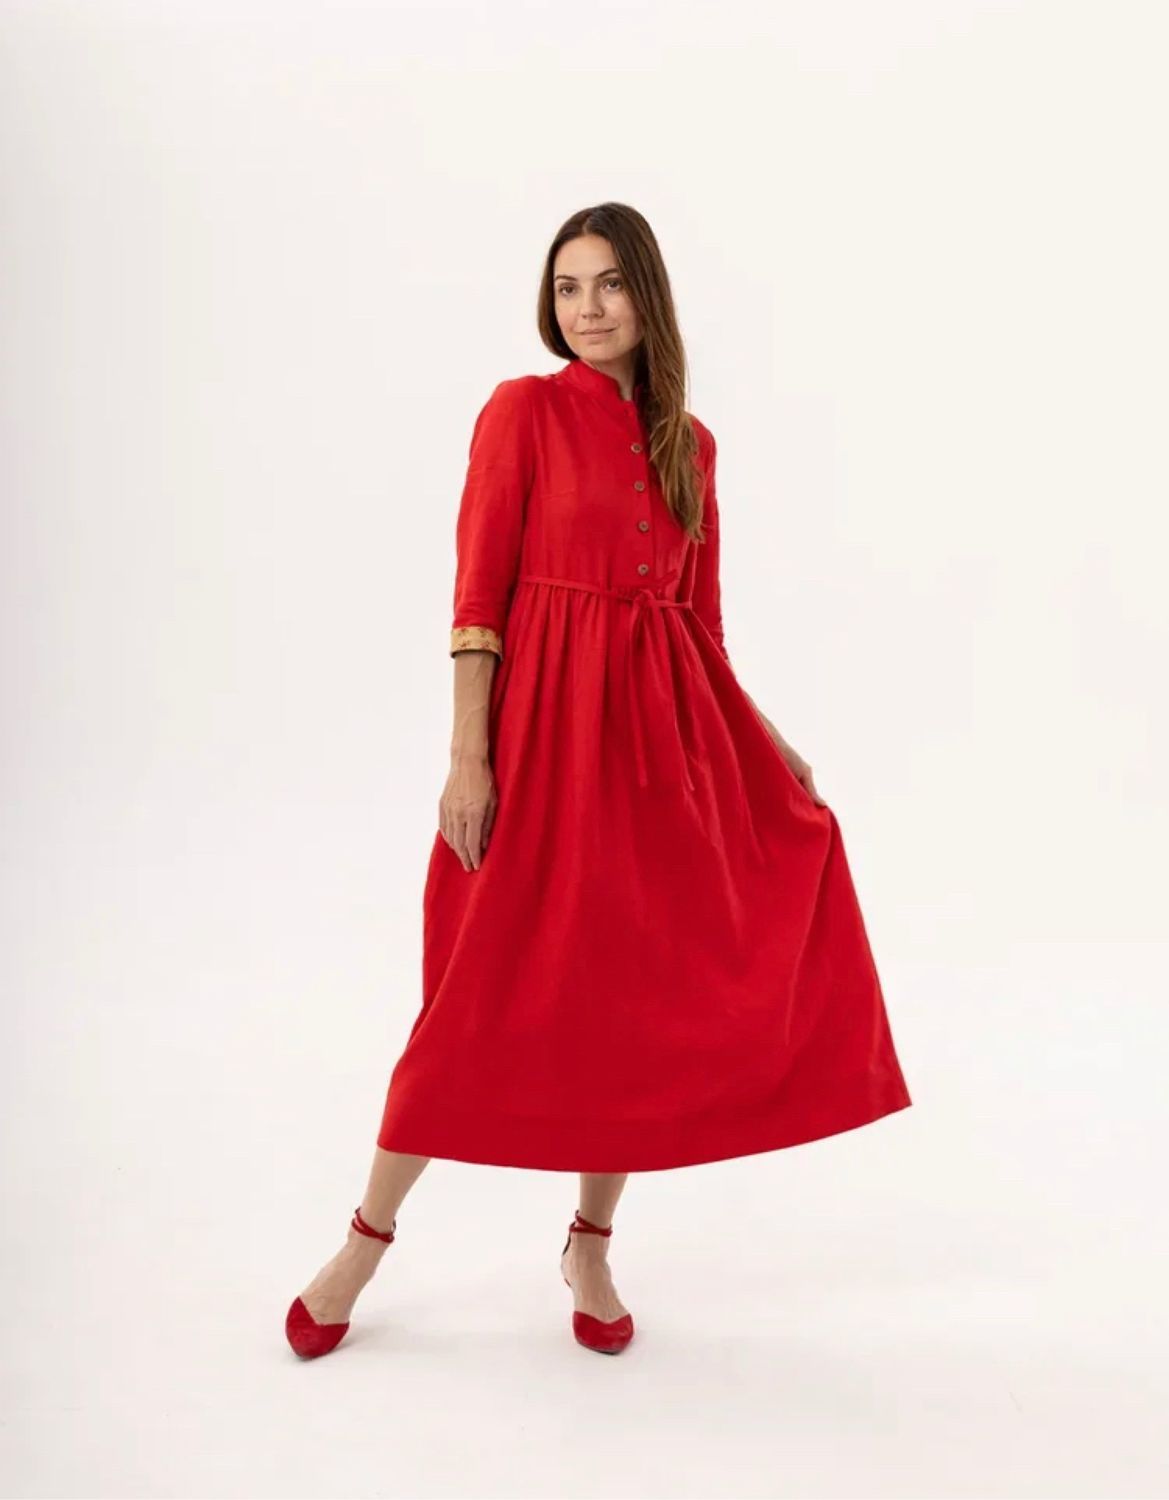 Красное платье лен. Красное платье из льна. Льняное платье красного цвета. Льняное красное длинное платье.